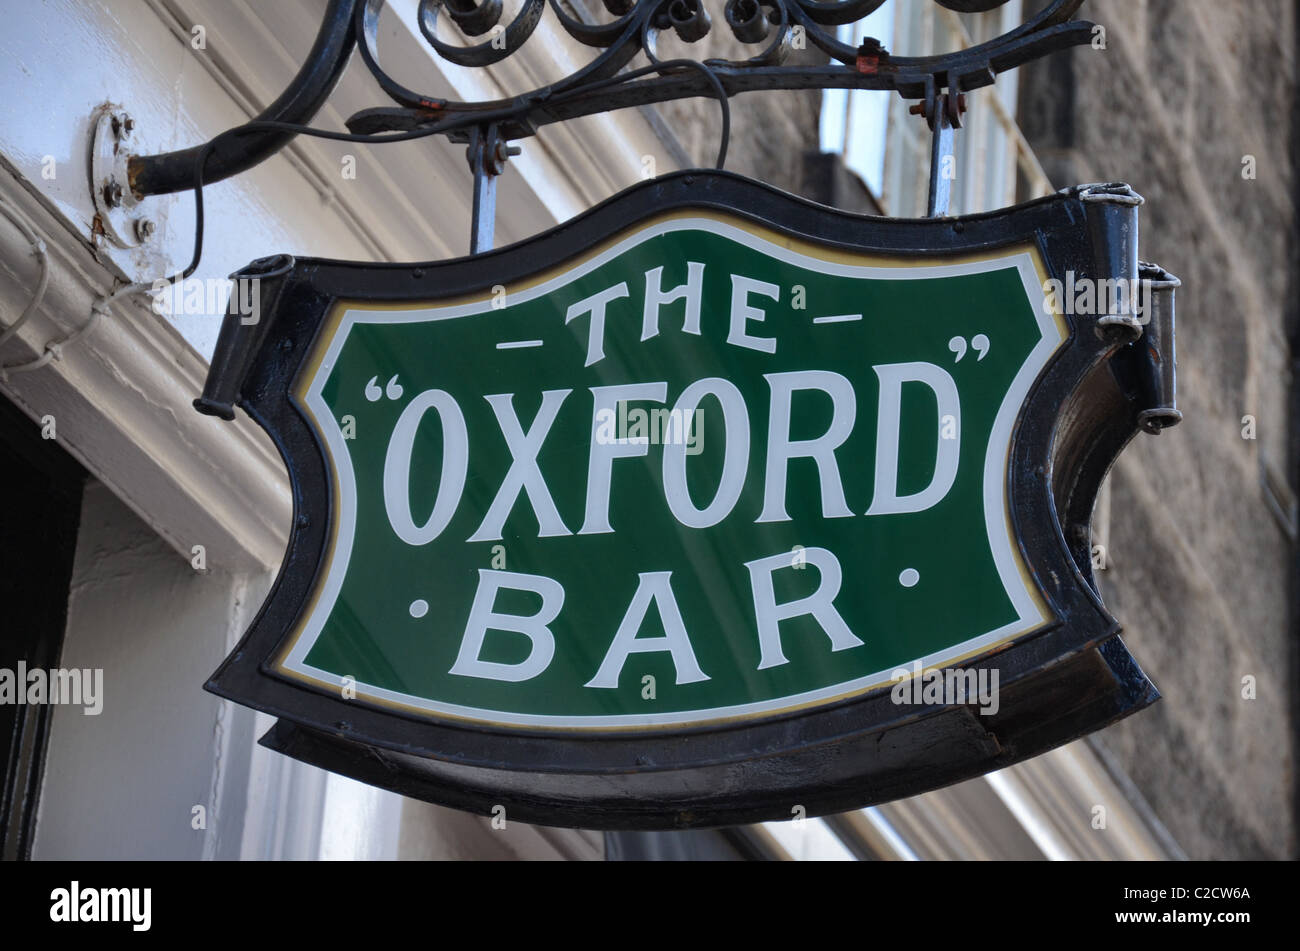 Melden Sie sich außerhalb der Oxford Bar in Young Street, das Wasserloch des Ian Rankins fiktiven Inspector Rebus. Stockfoto